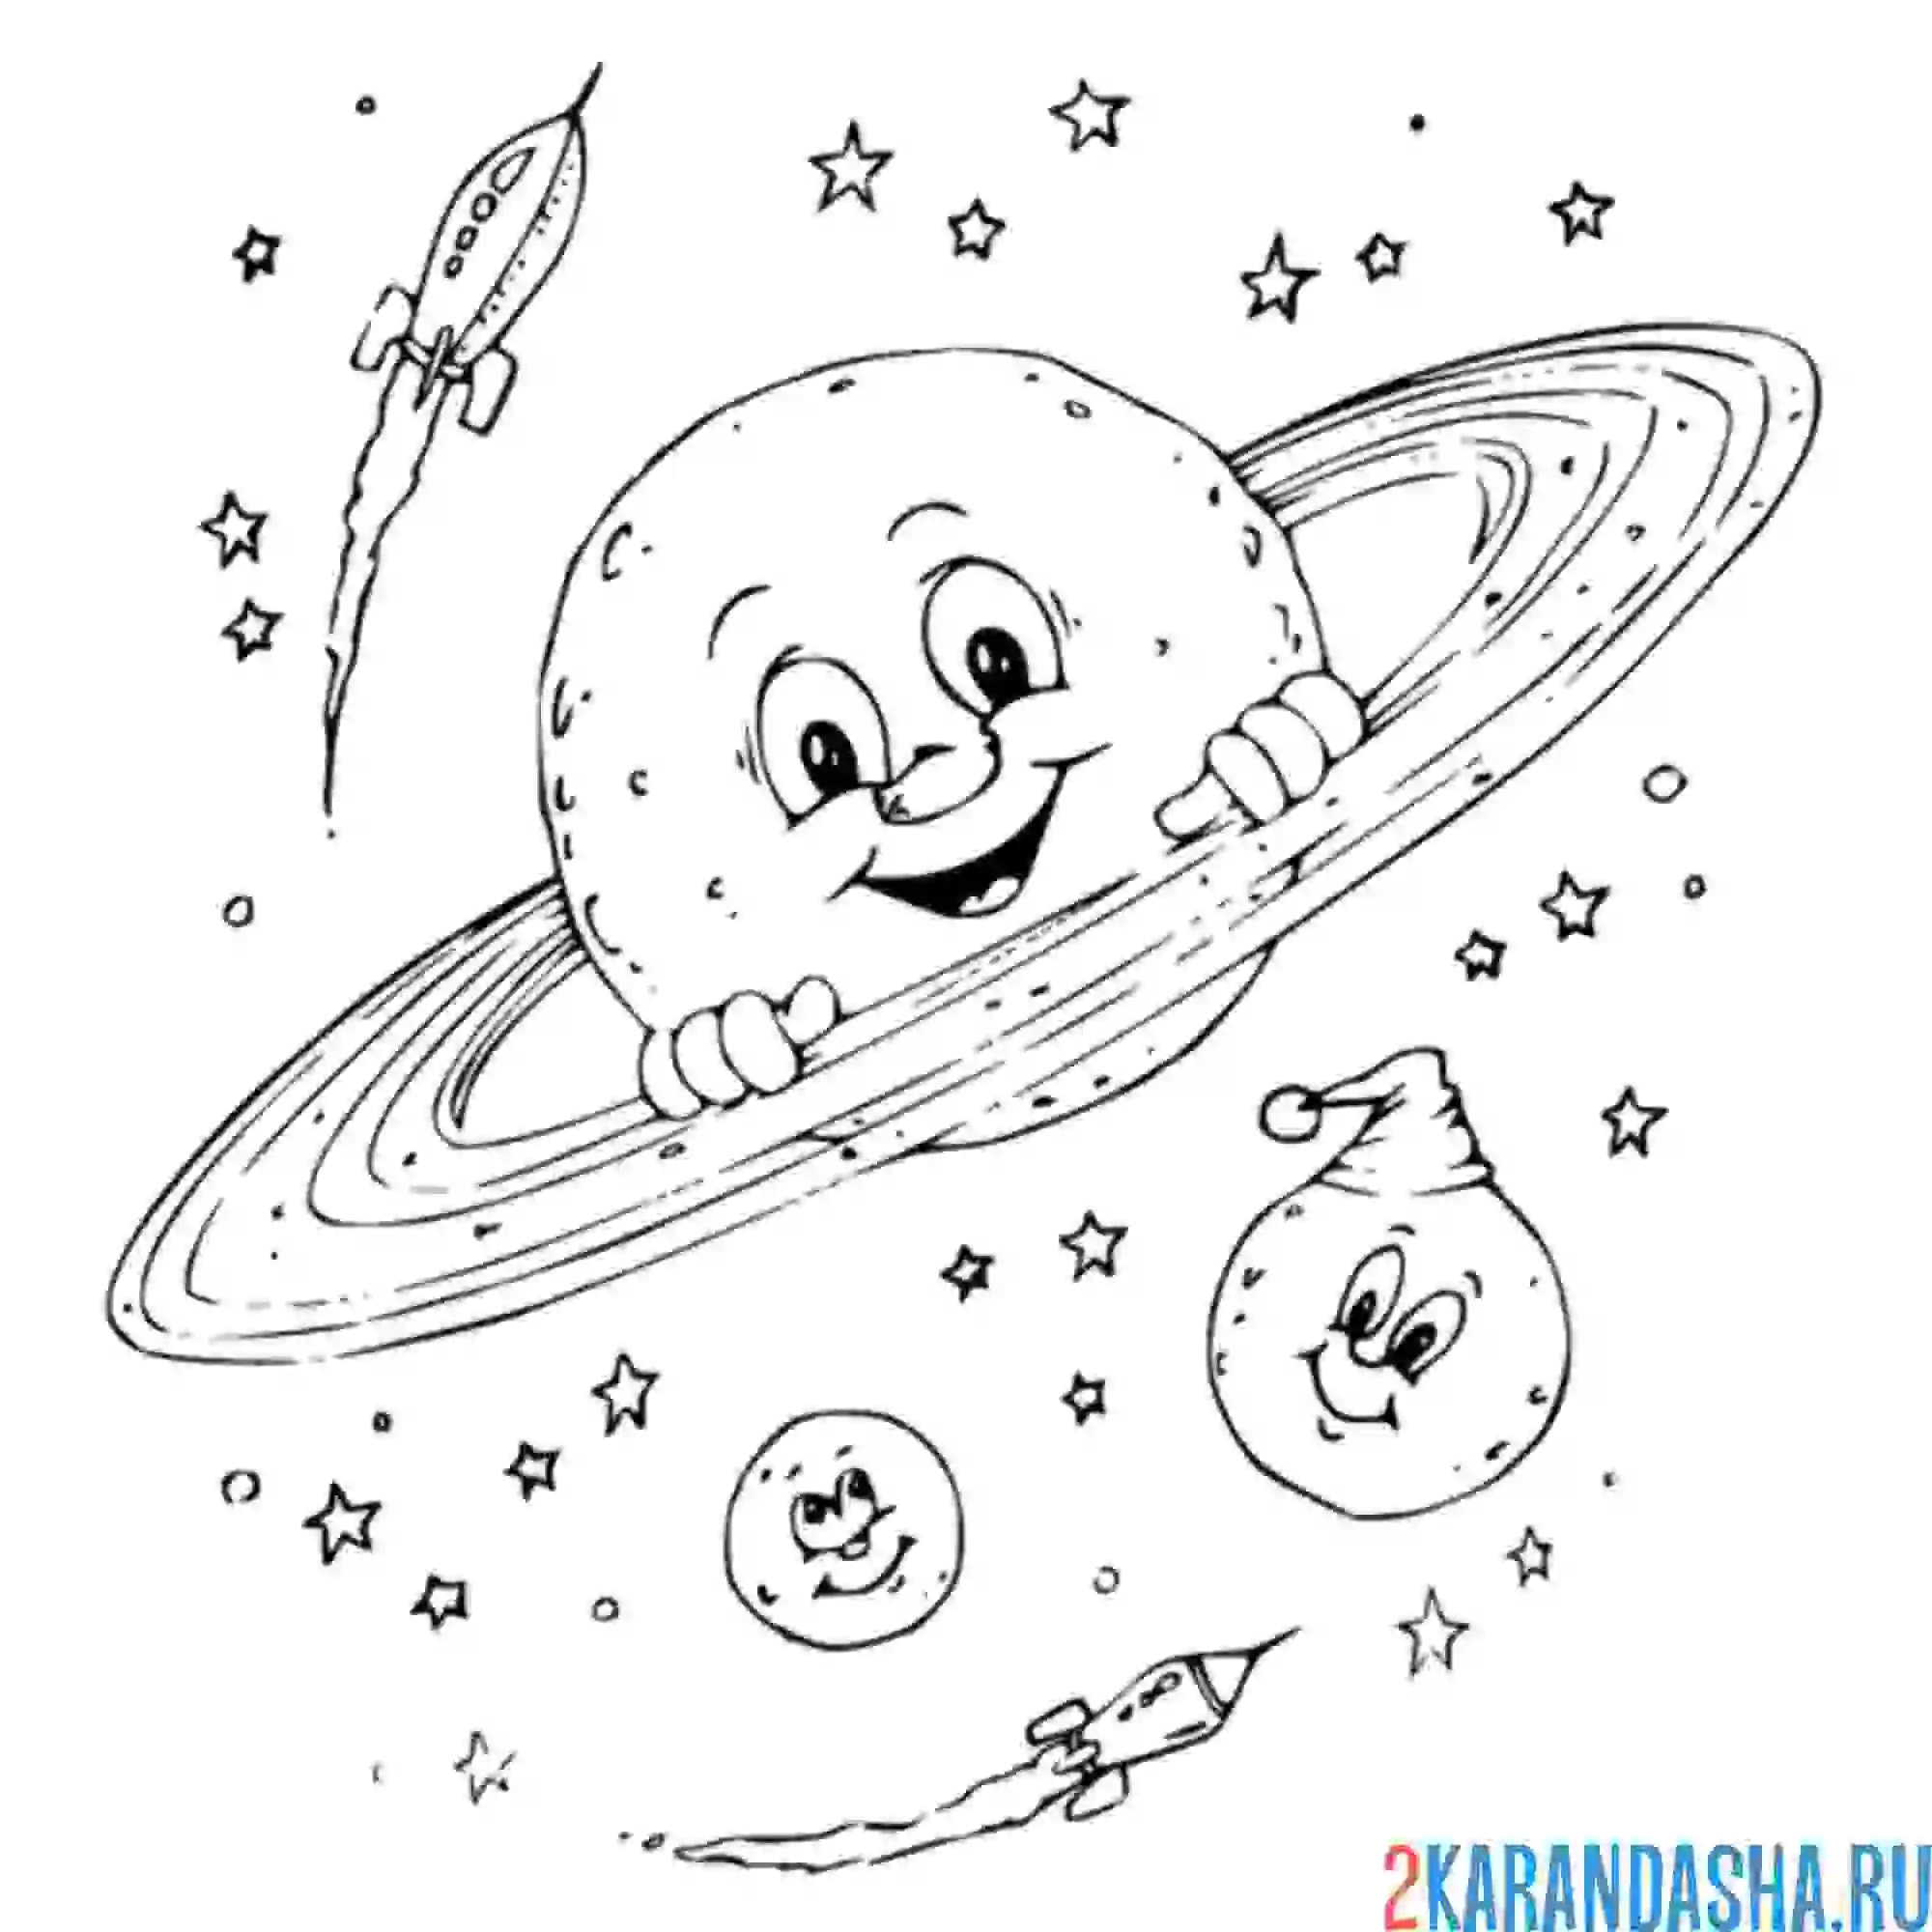 Планеты картинки для детей раскраски. Космос раскраска для детей. Раскраска. В космосе. Раскраски на космическую тему. Раскраска космос и планеты для детей.